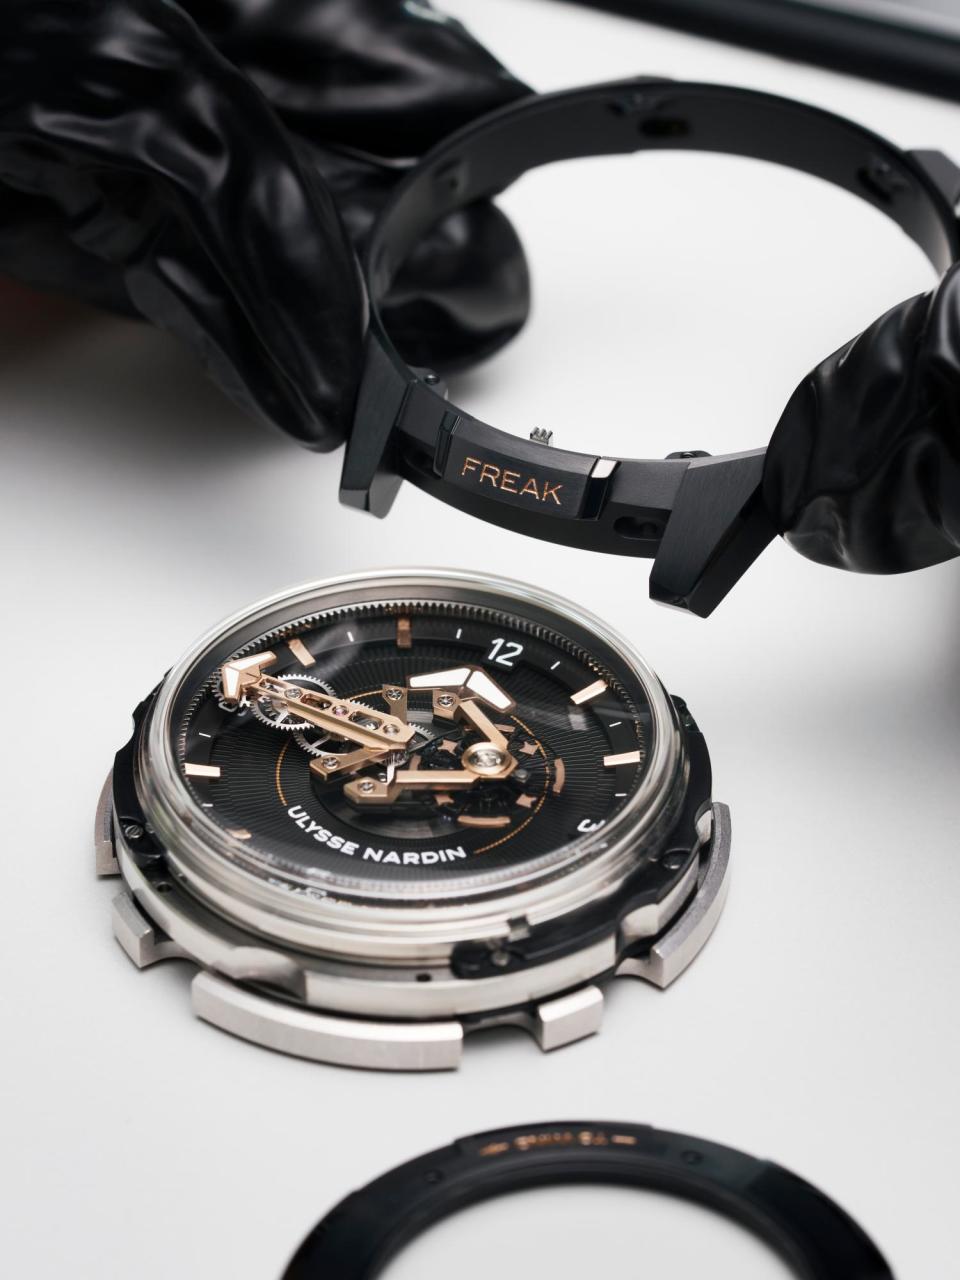 天才製錶師歐克林博士，與特立獨行的雅典錶老闆Rolf Schnyder，於2001年一起合作研發第一代Freak腕錶時，它代表著於21世紀初期開始萌芽的「高科技」機械錶的趨勢。